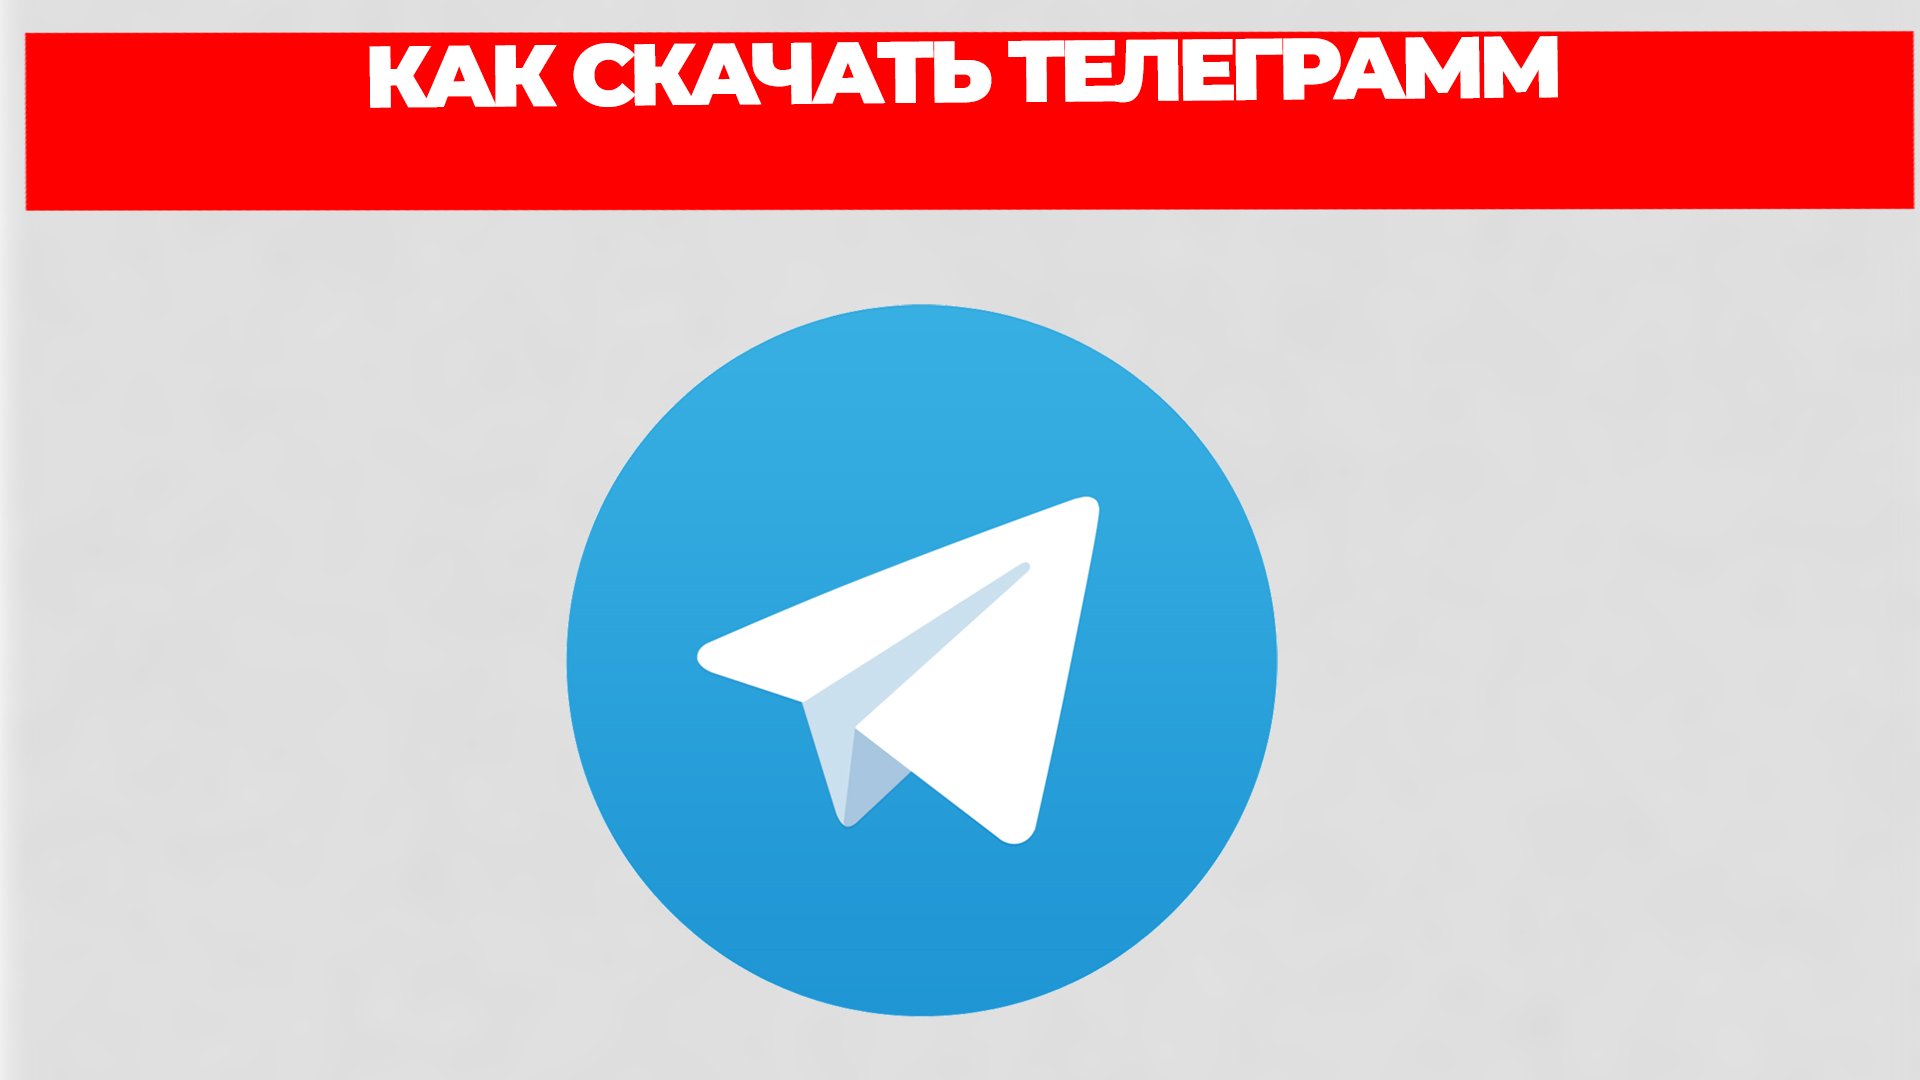 Скачать телеграмм на русском языке на компьютер через торрент бесплатно фото 113